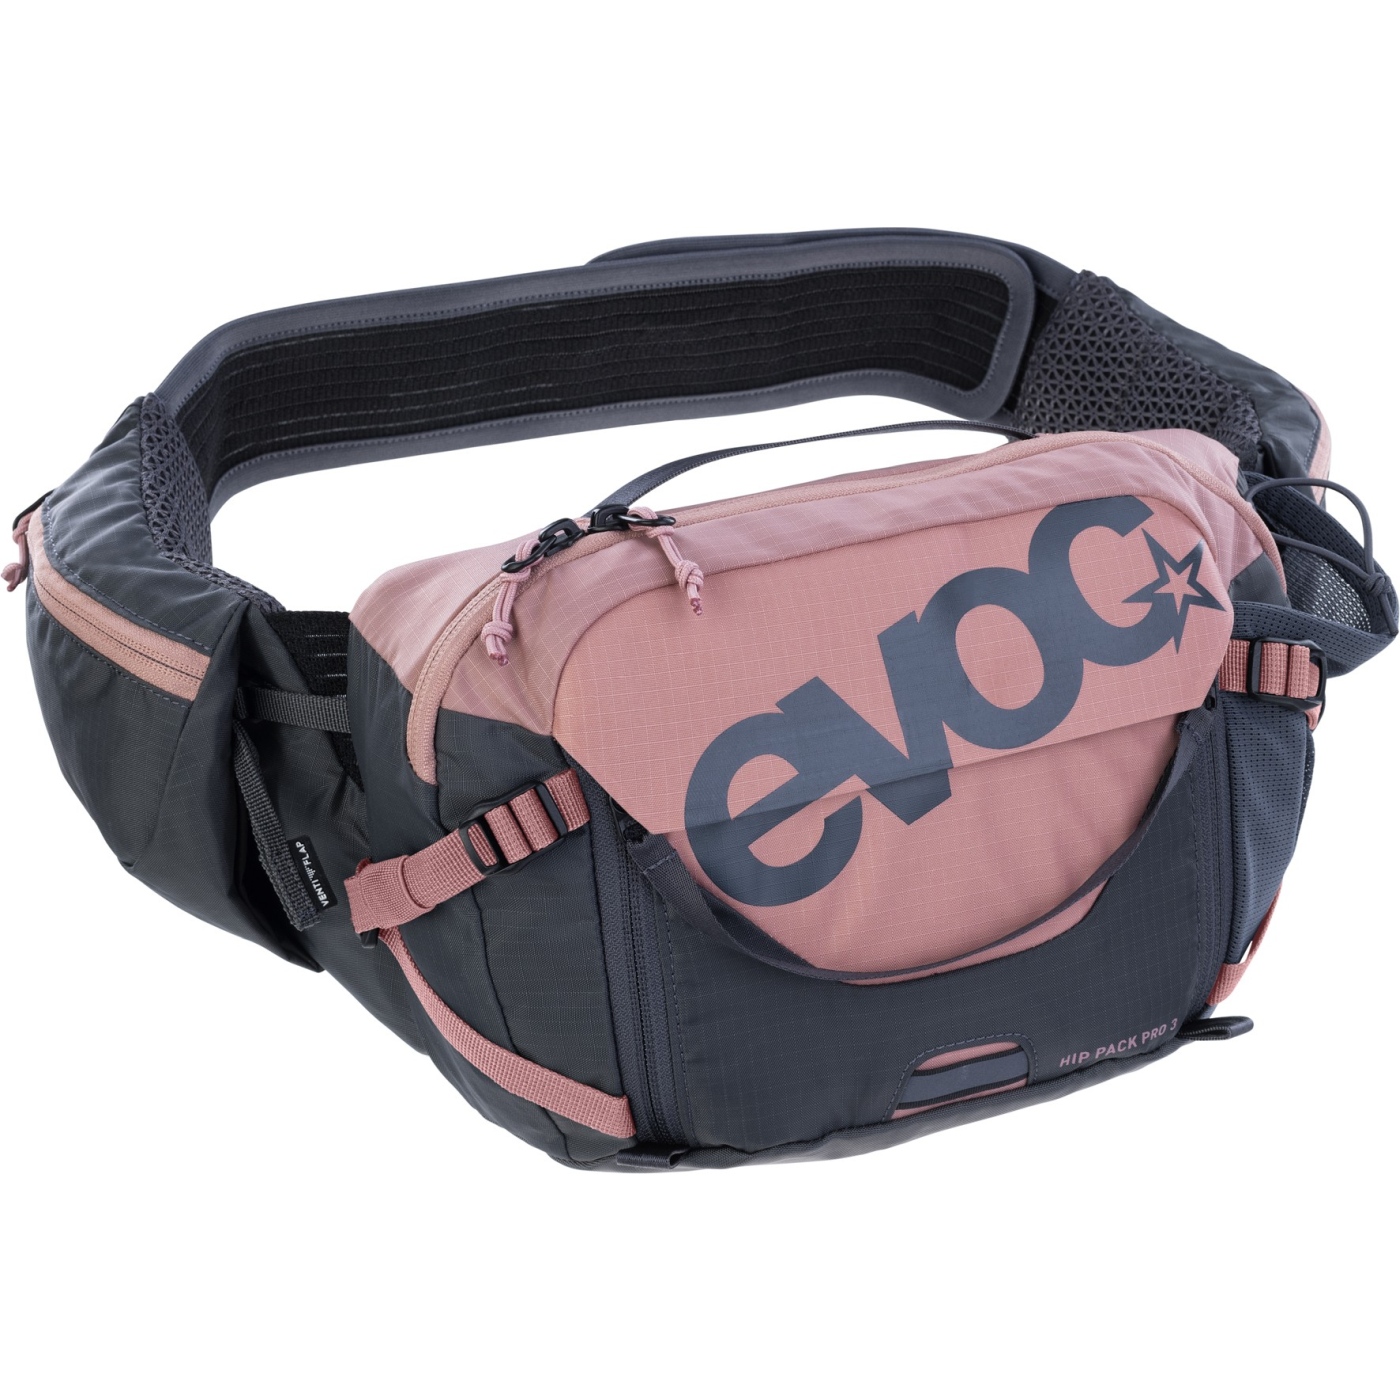 Produktbild von EVOC Hip Pack Pro Hüfttasche - 3 L - Dusty Pink - Carbon Grey